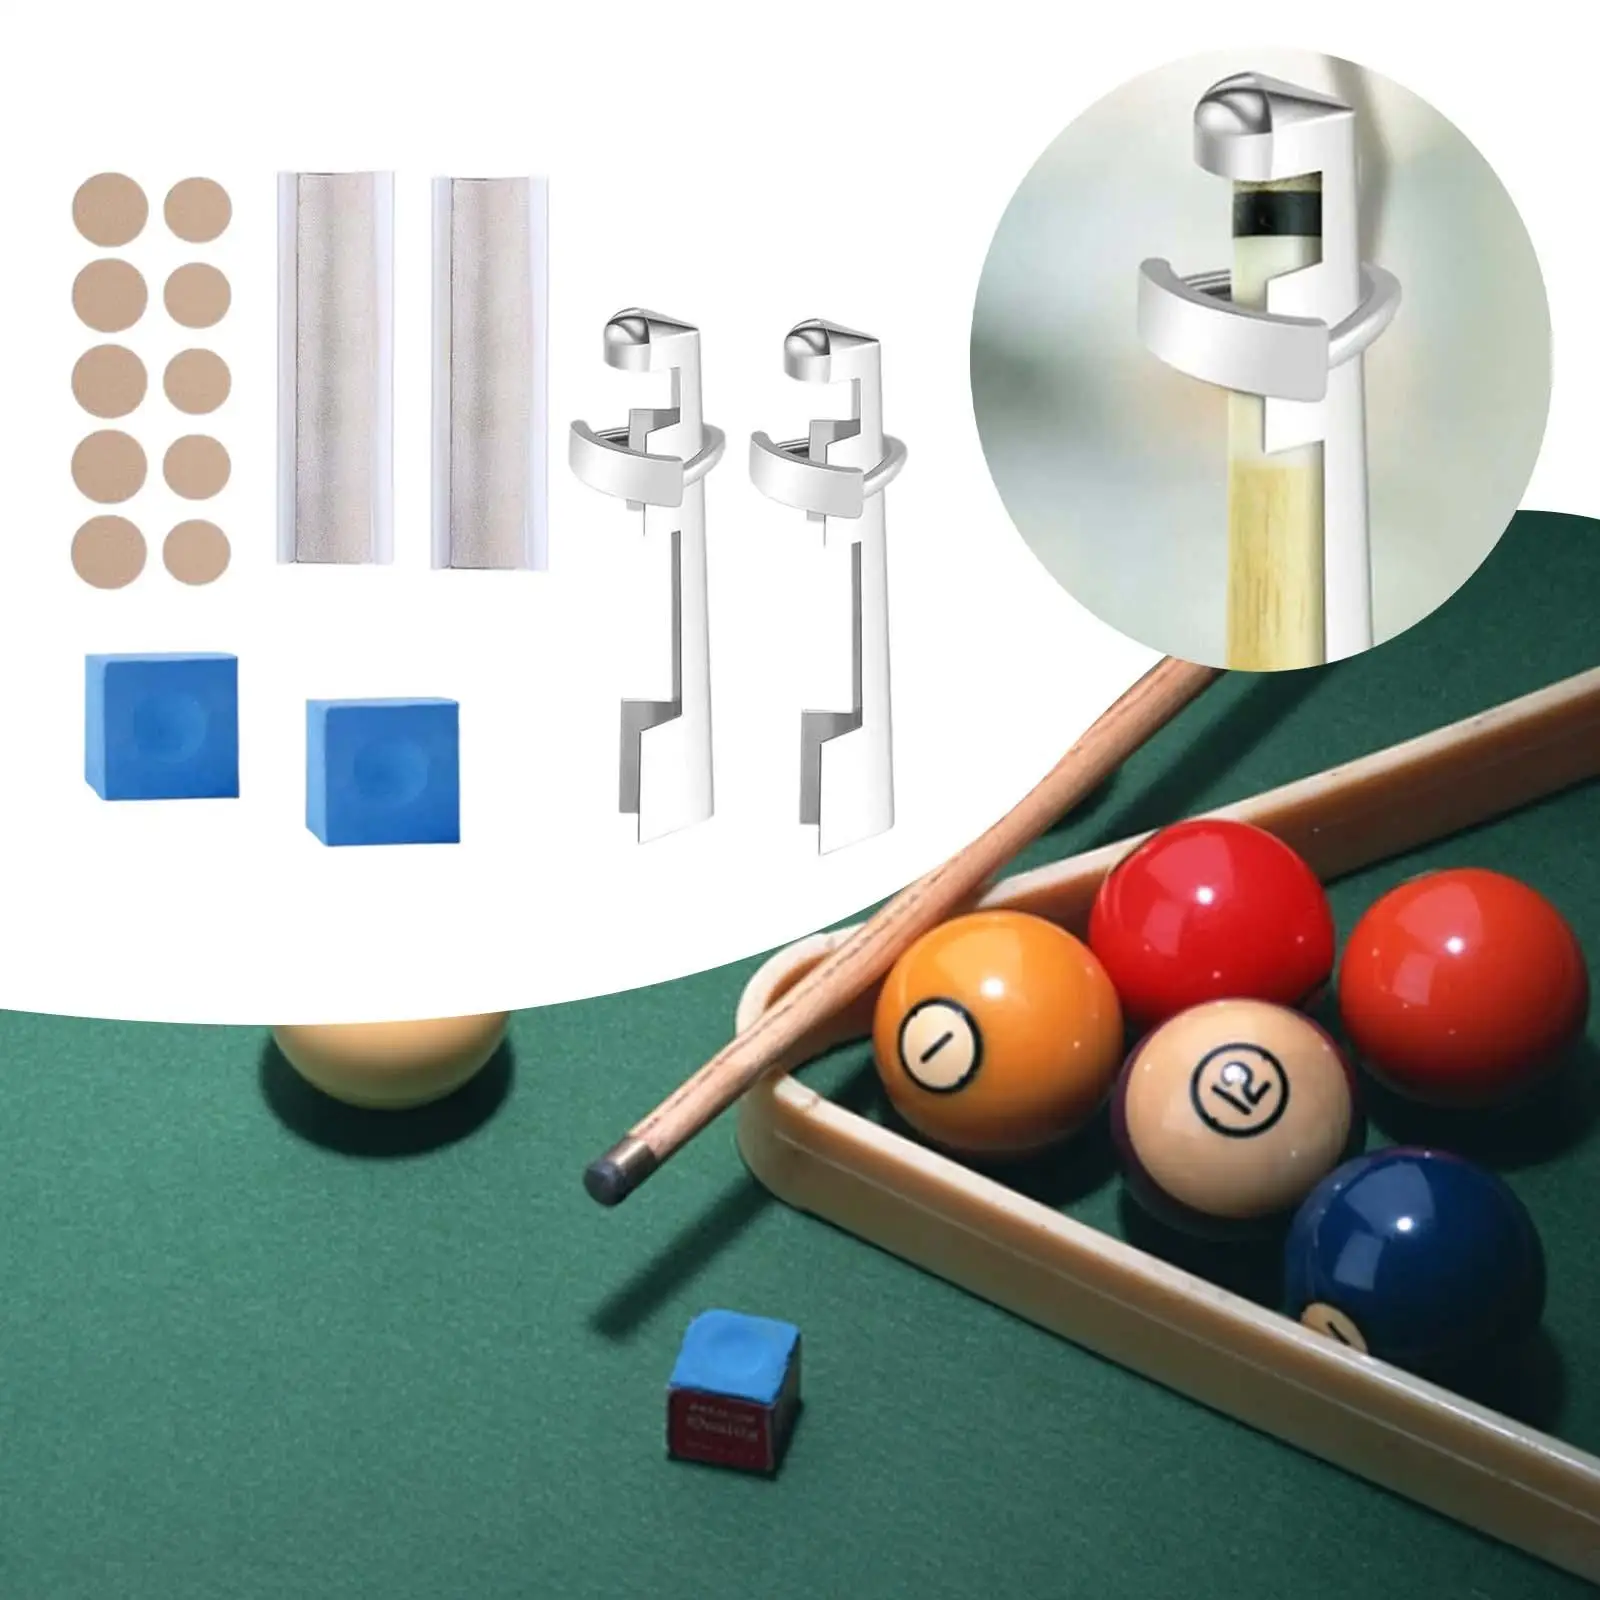 16x Pool Cue Tip Repair Kit Billiards Pool Tip Shaper Billiard Cue Tips Replacement Kit Chalk Cubes Portable Cue Repair Set